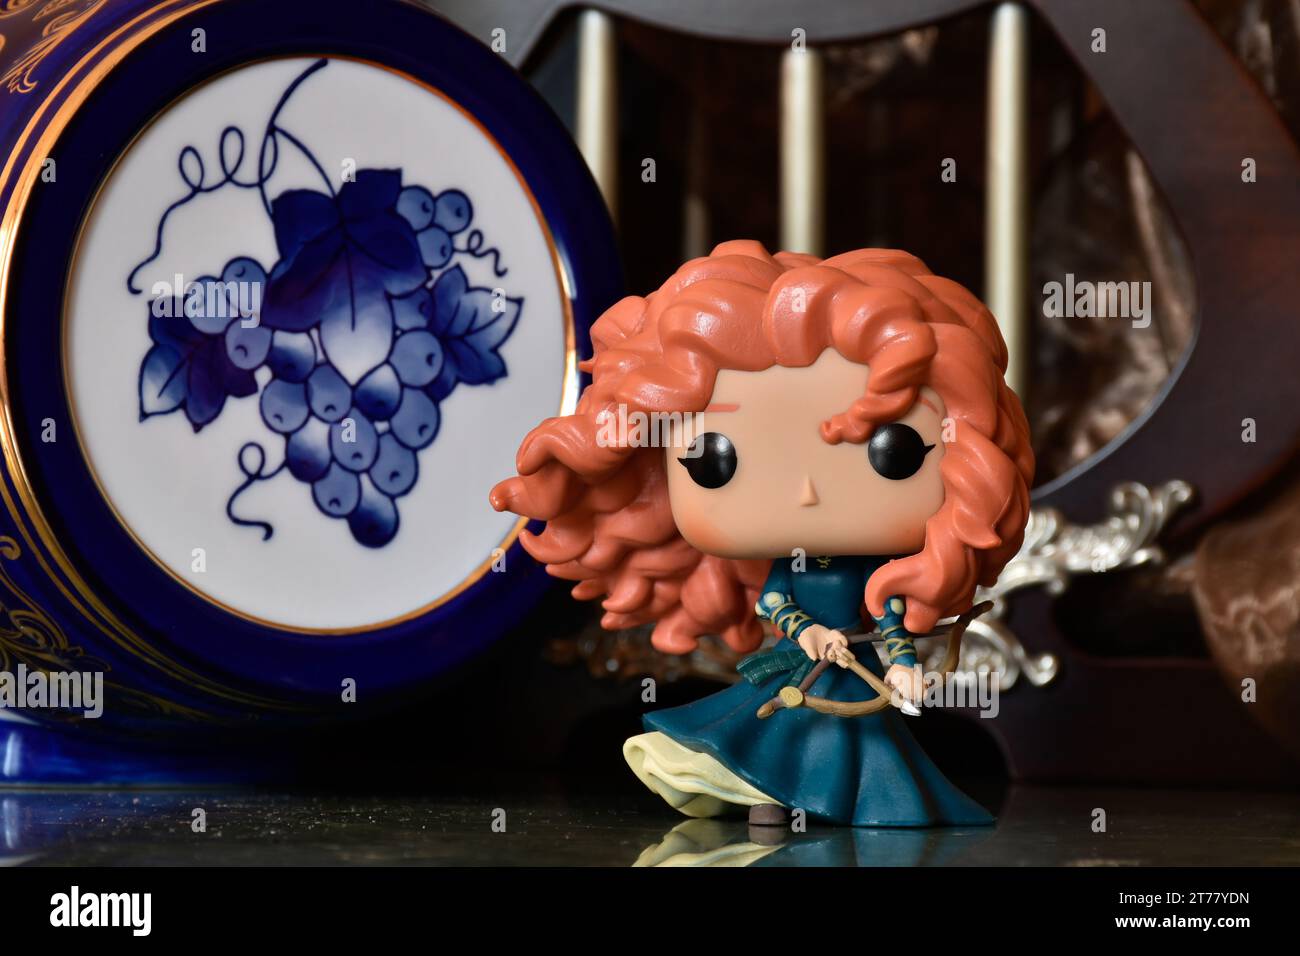 Funko Pop action figure della principessa Merida con arco e freccia del film d'animazione Brave. Castello medievale, favoloso regno, fusto blu porcellana. Foto Stock